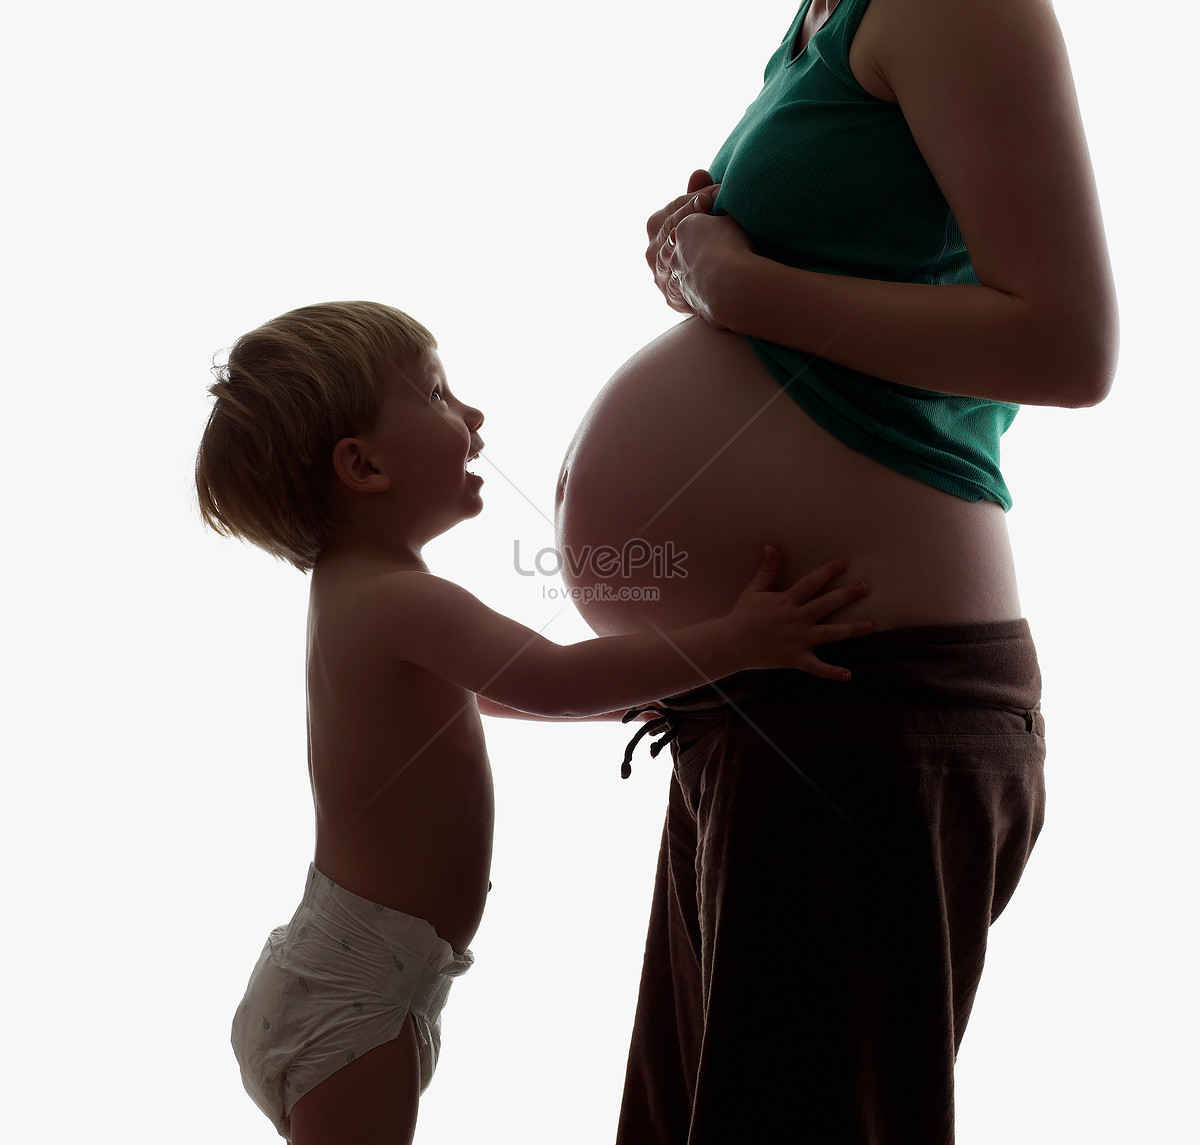 Материнство -> Беременная мама на крещении своего сына